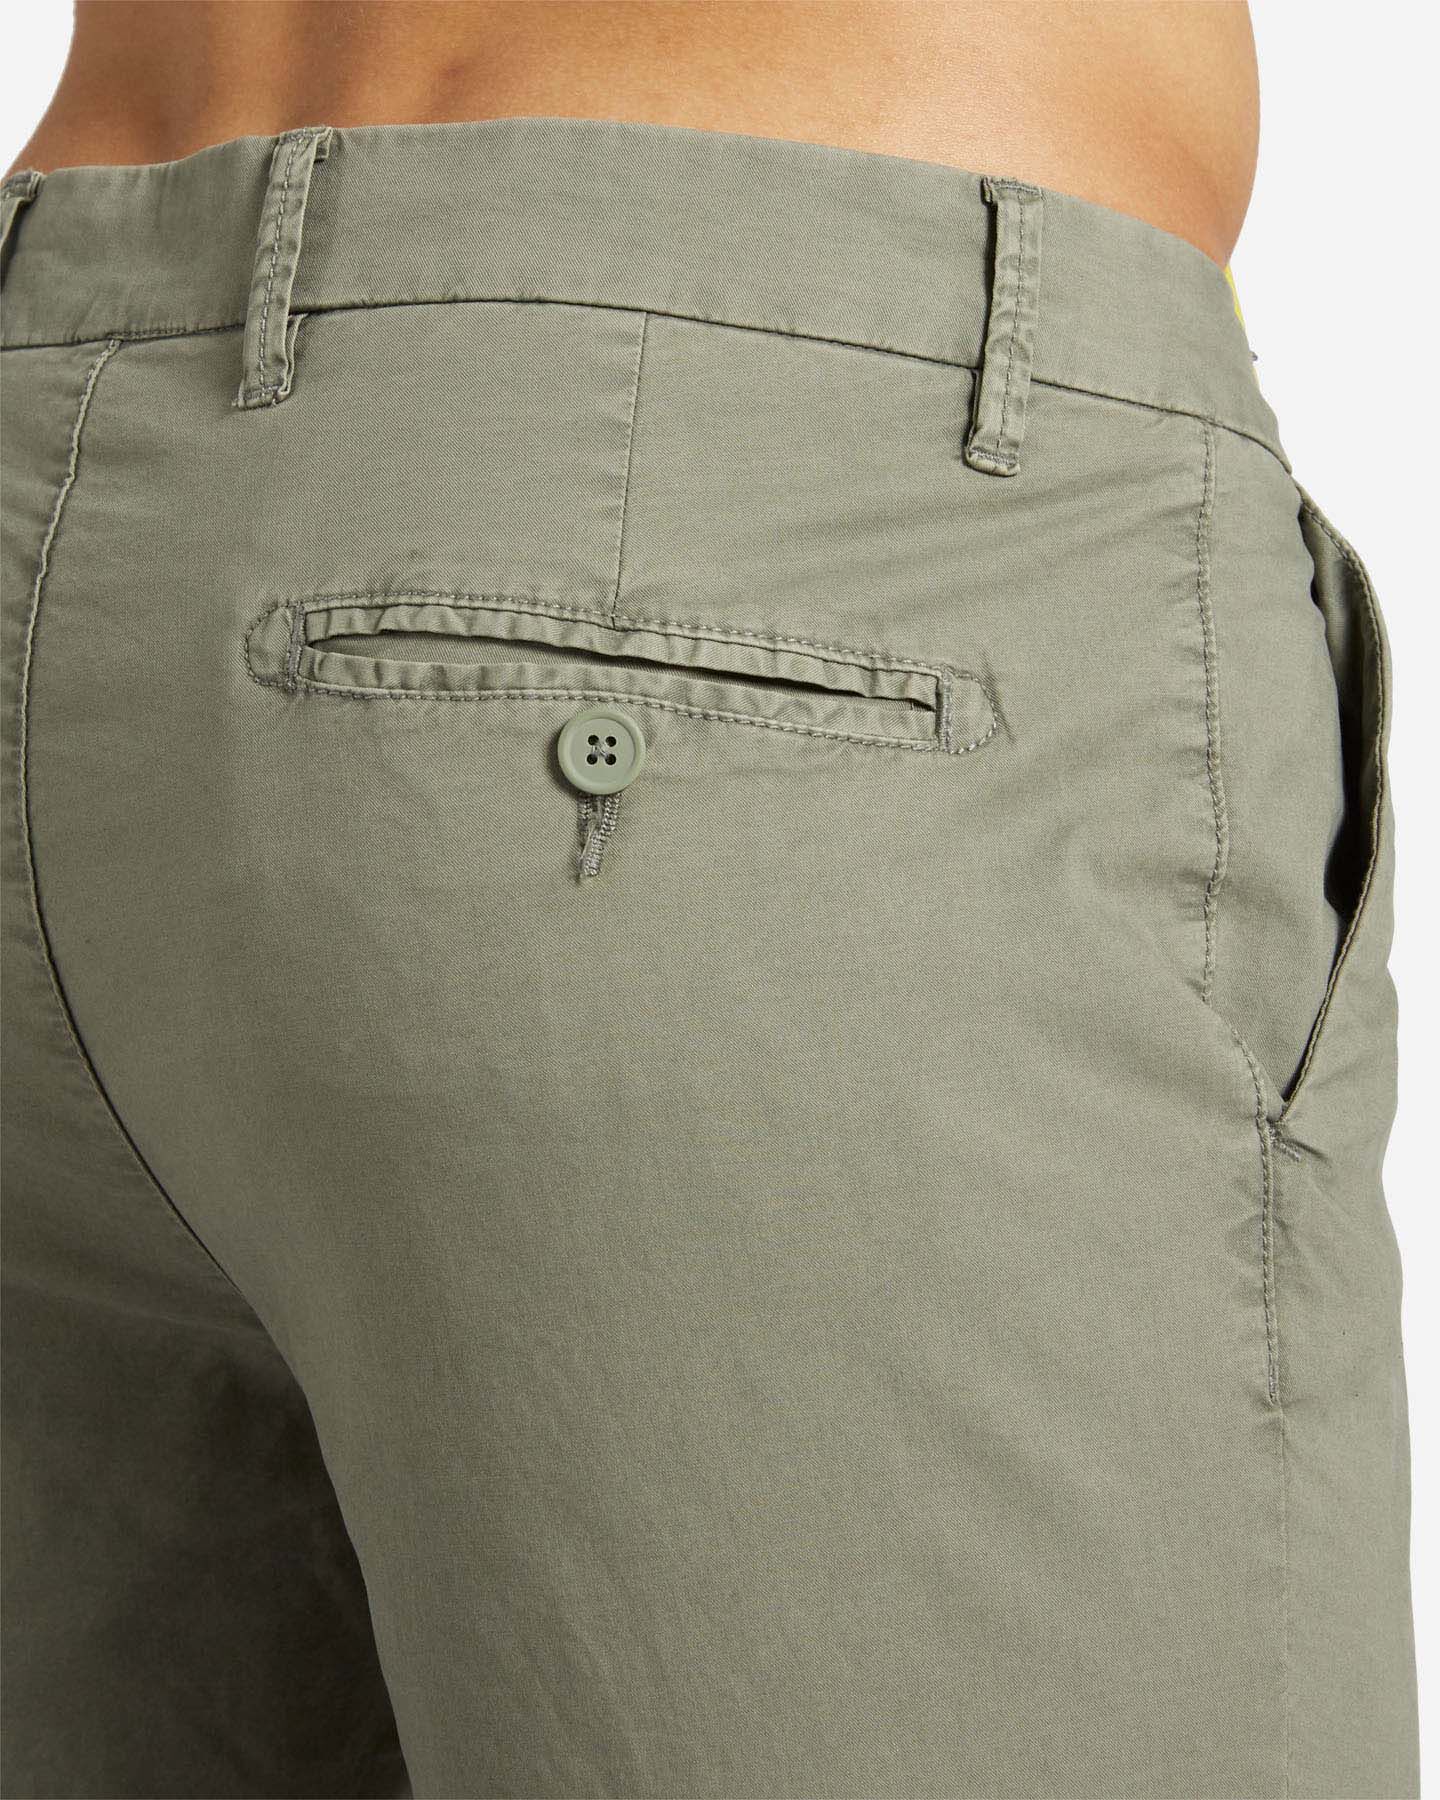  Pantalone DACK'S URBAN M S4129732|762|46 scatto 3